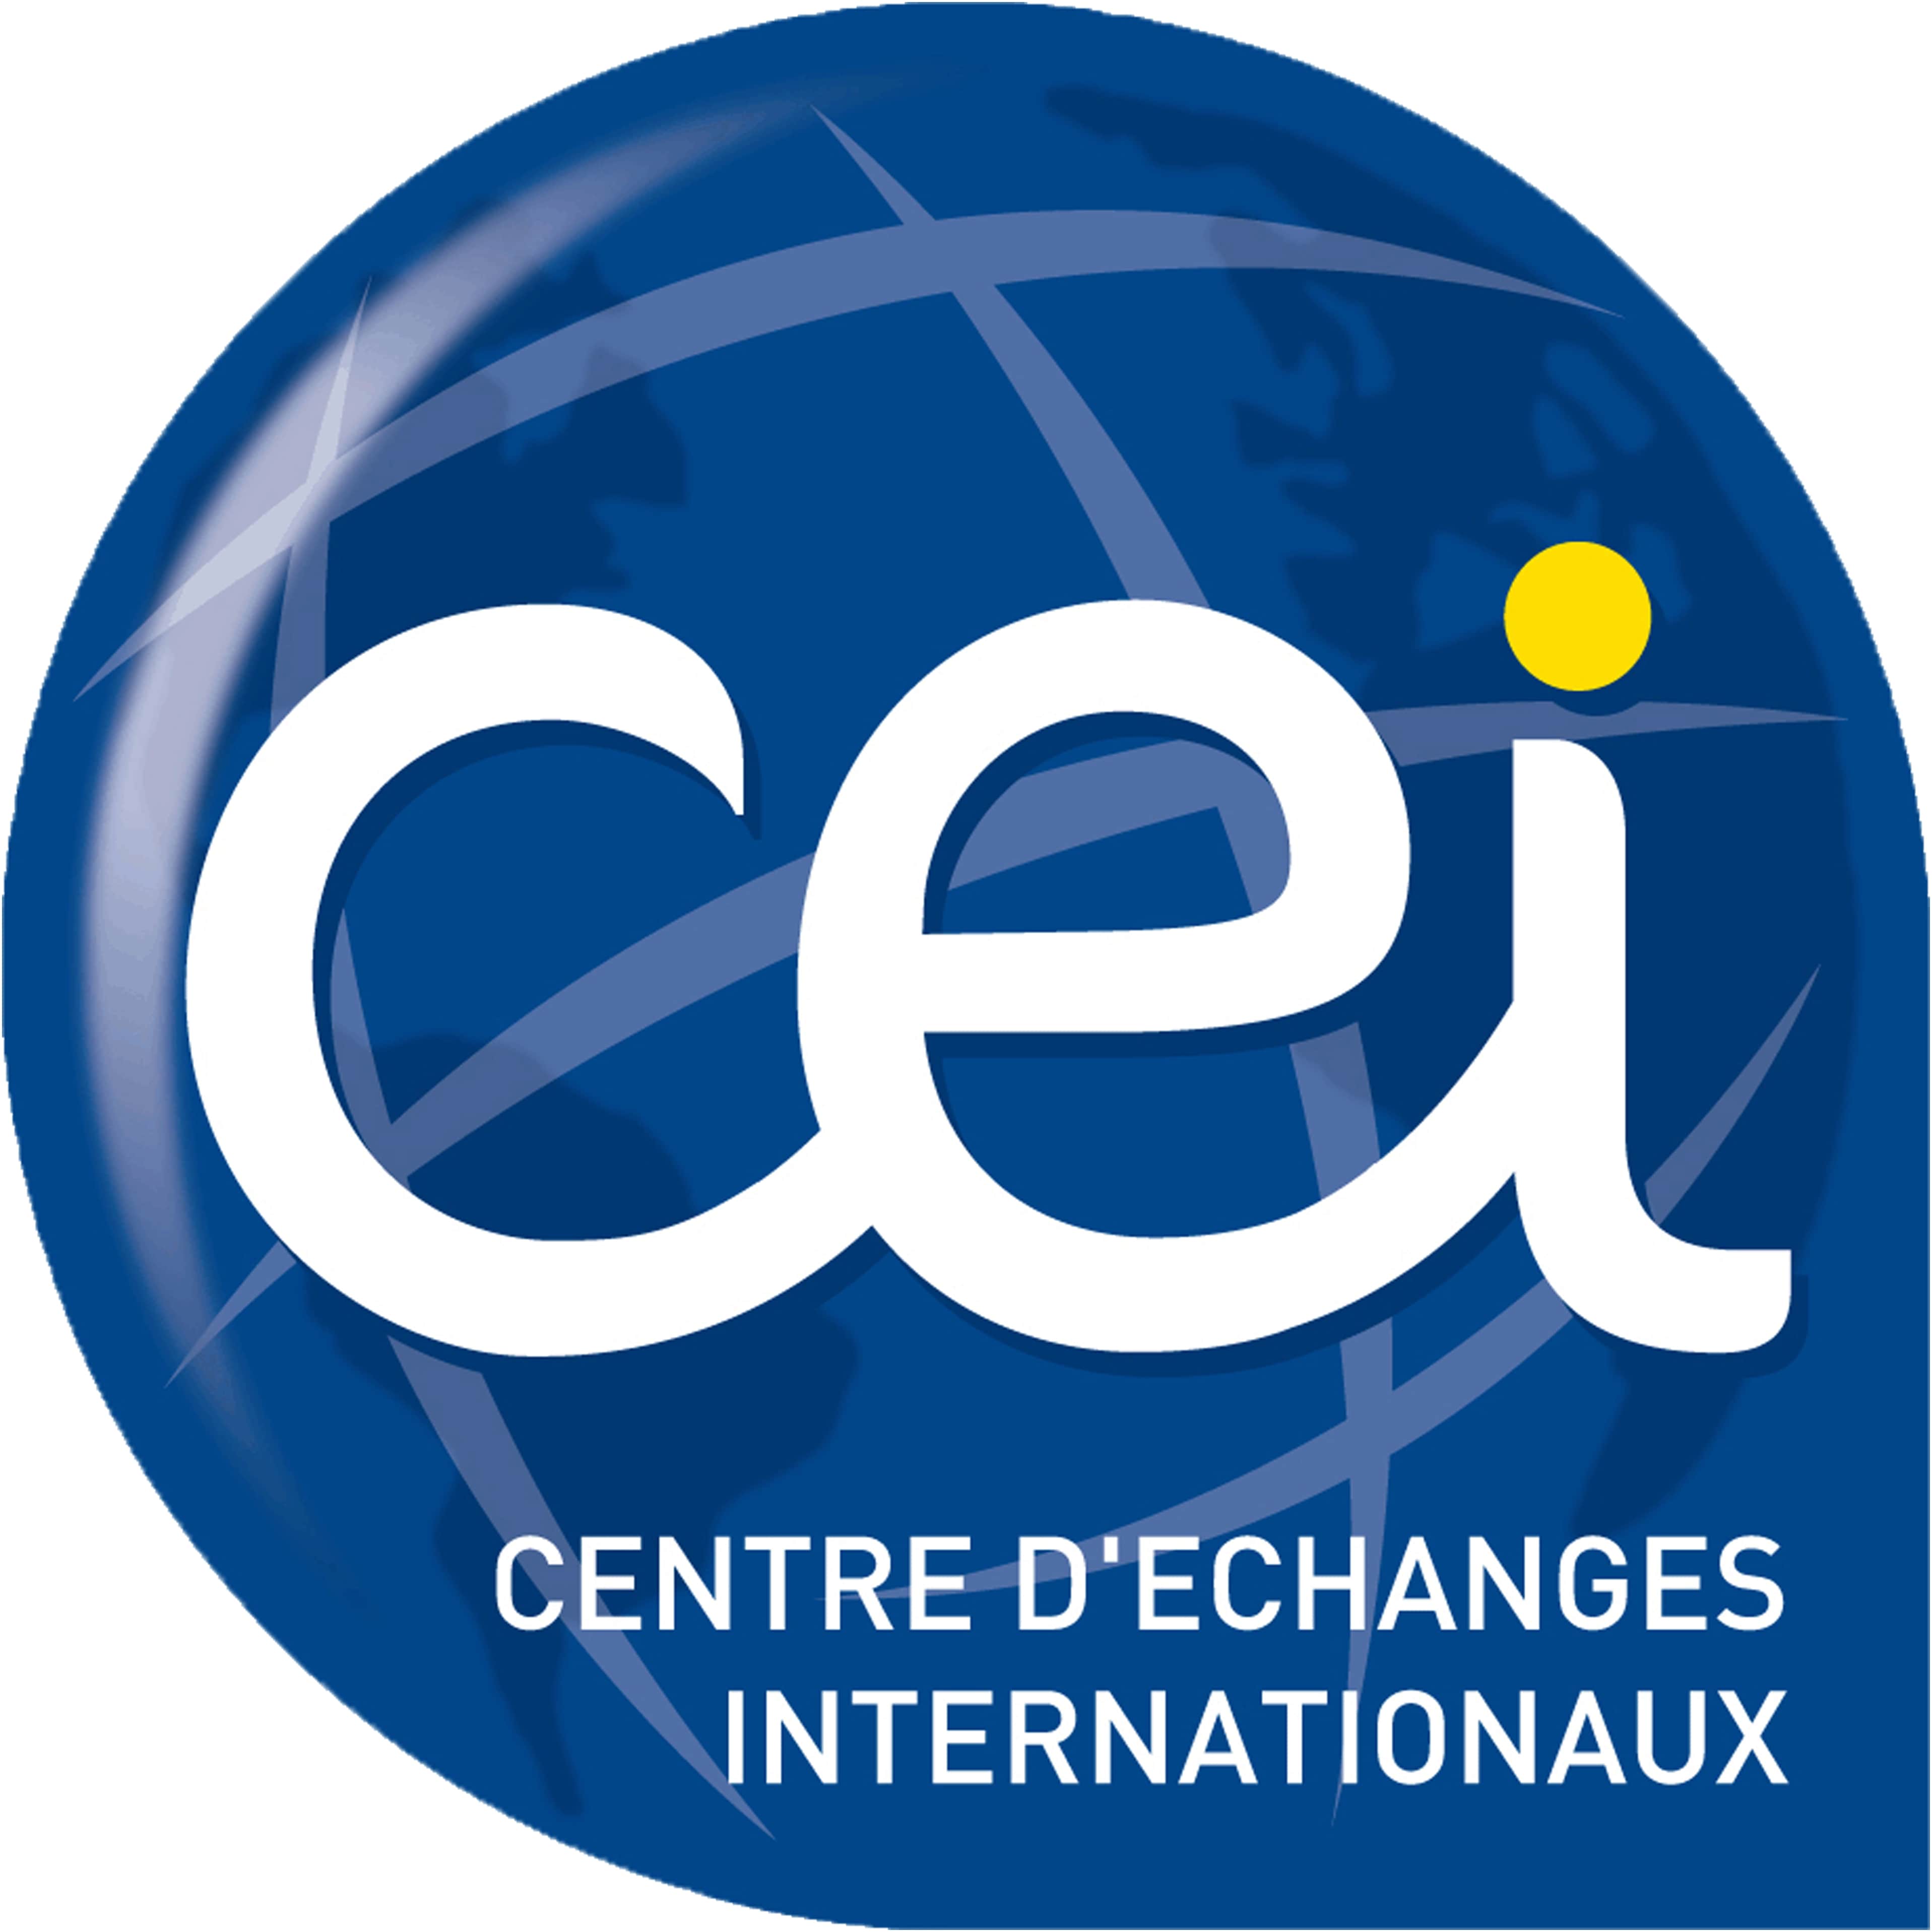 CENTRE D'ECHANGES INTERNATIONAUX (CEI)